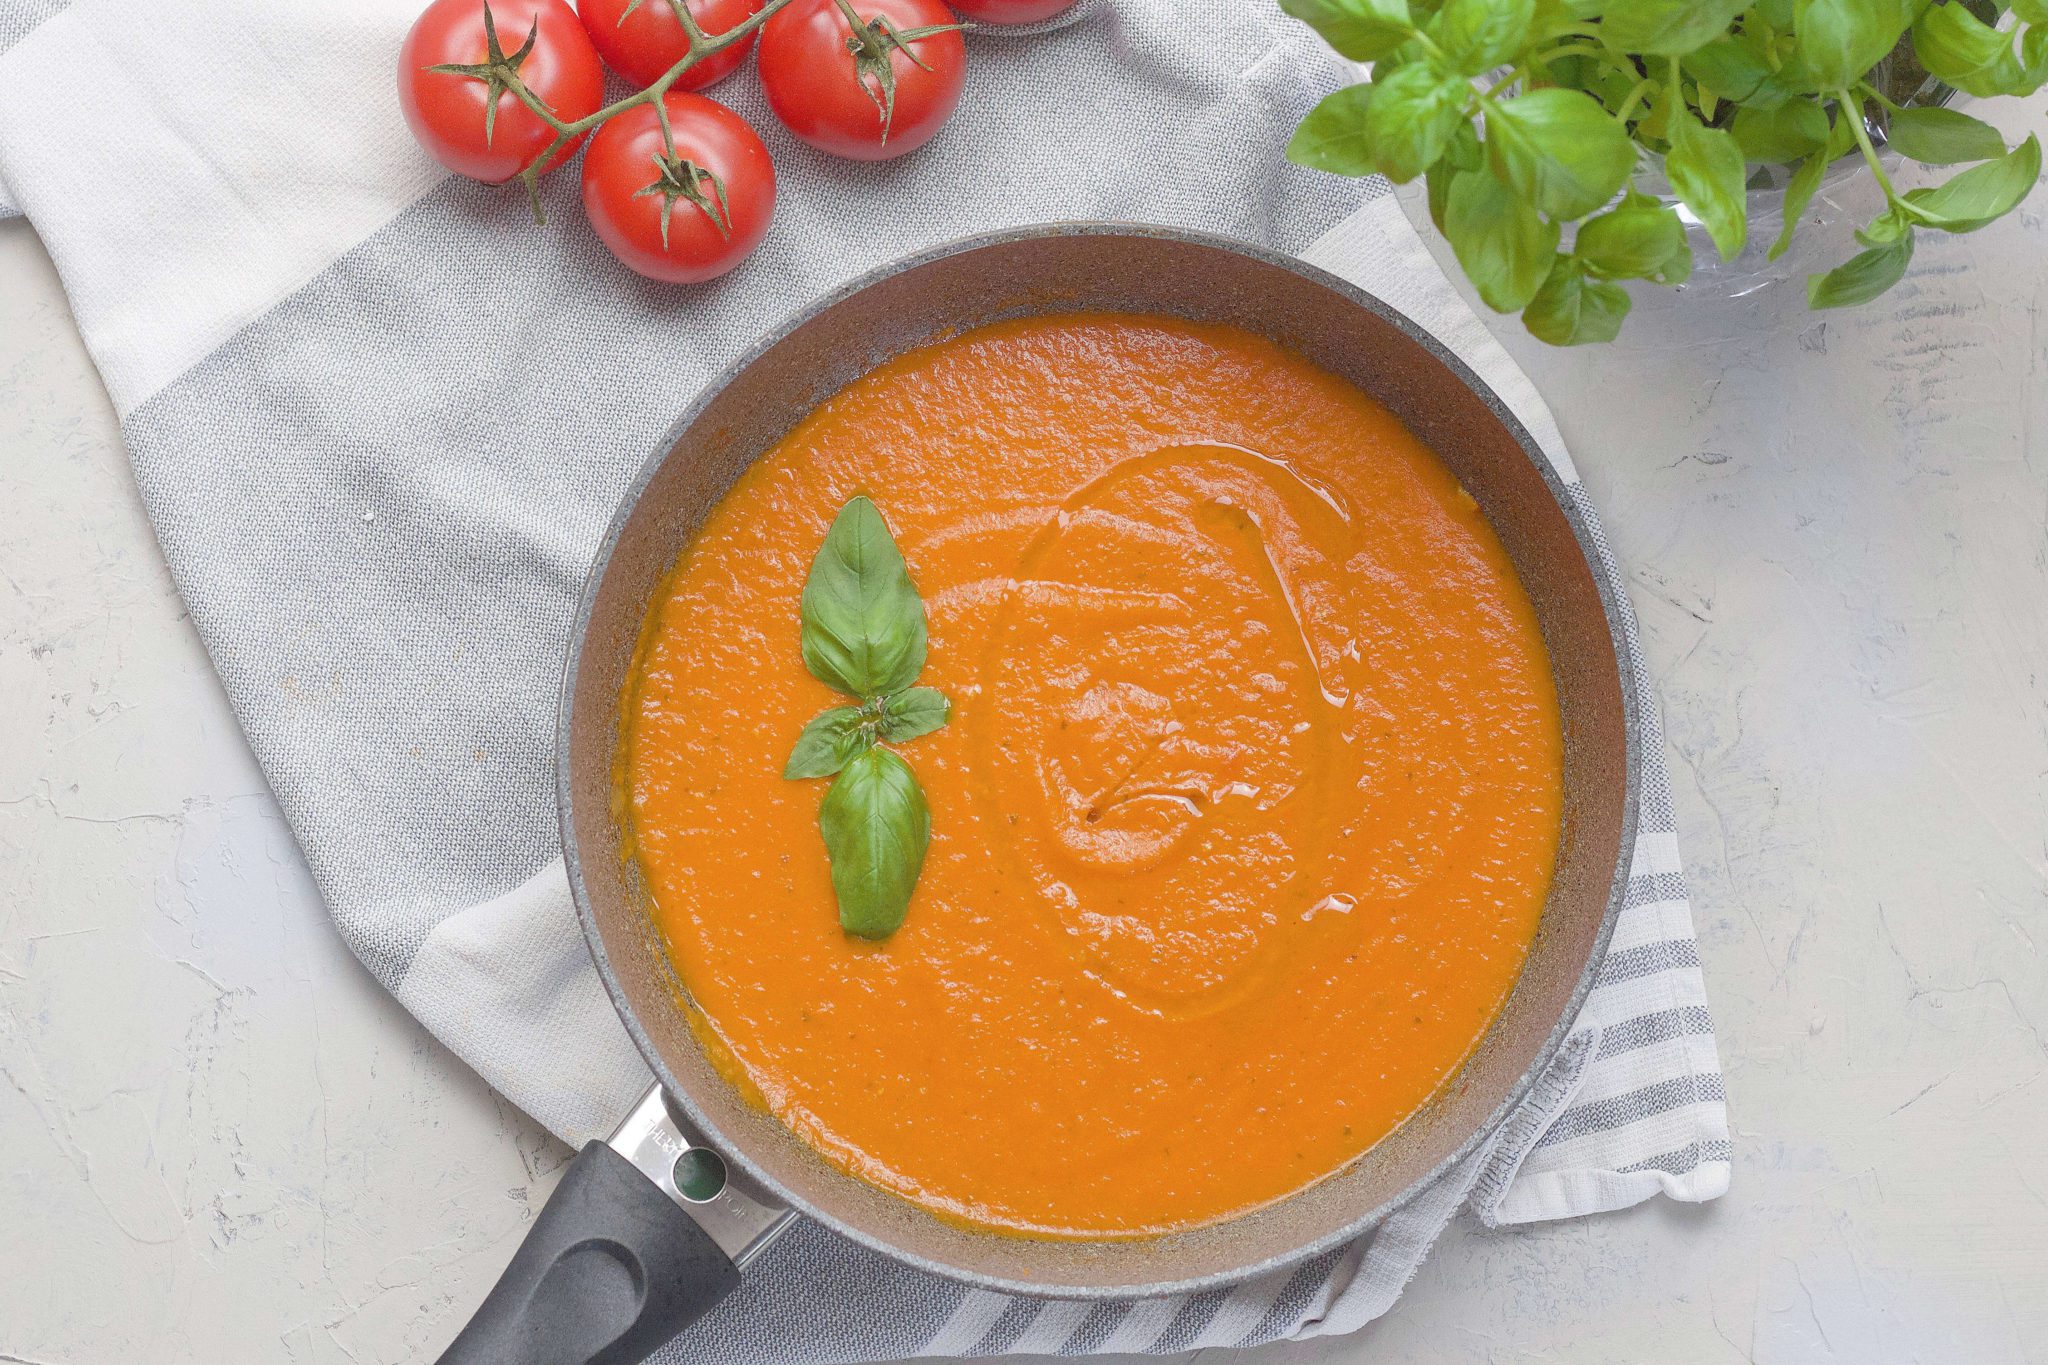 Easy Italian Marinara Sauce from fresh tomatoes.